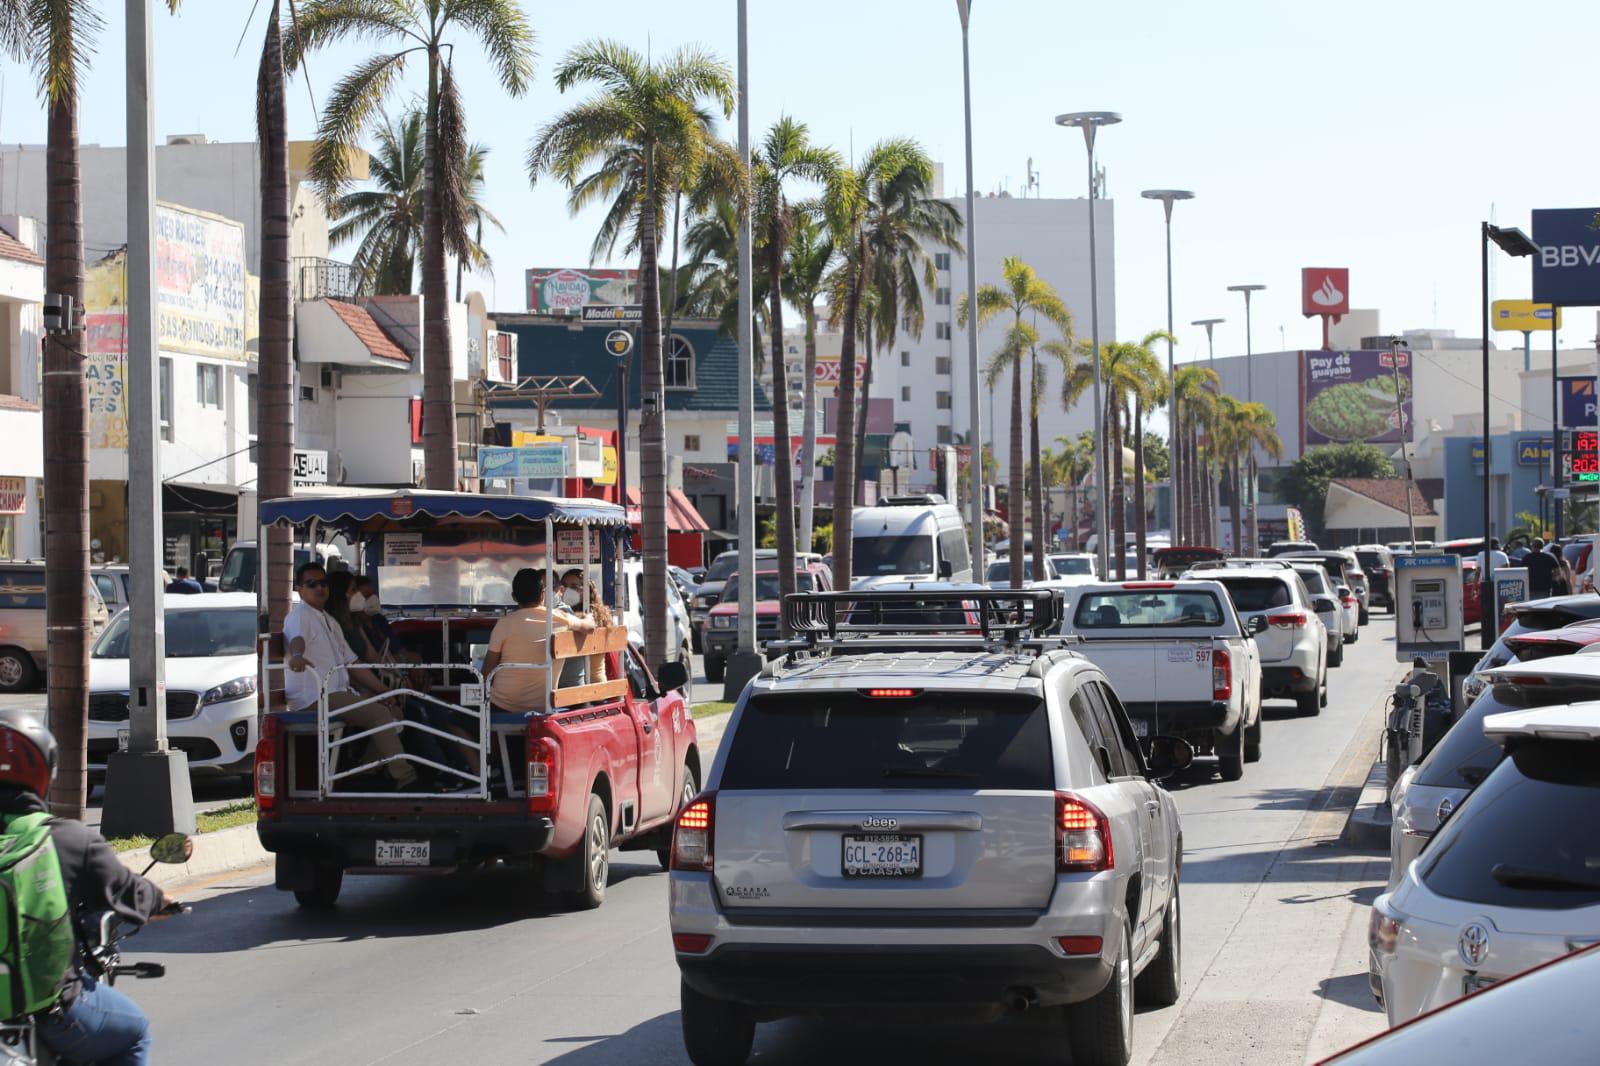 $!Turistas disfrutan del Faro, malecón, Zona Dorada y playas de Mazatlán; el tráfico aumenta y en tramos colapsa